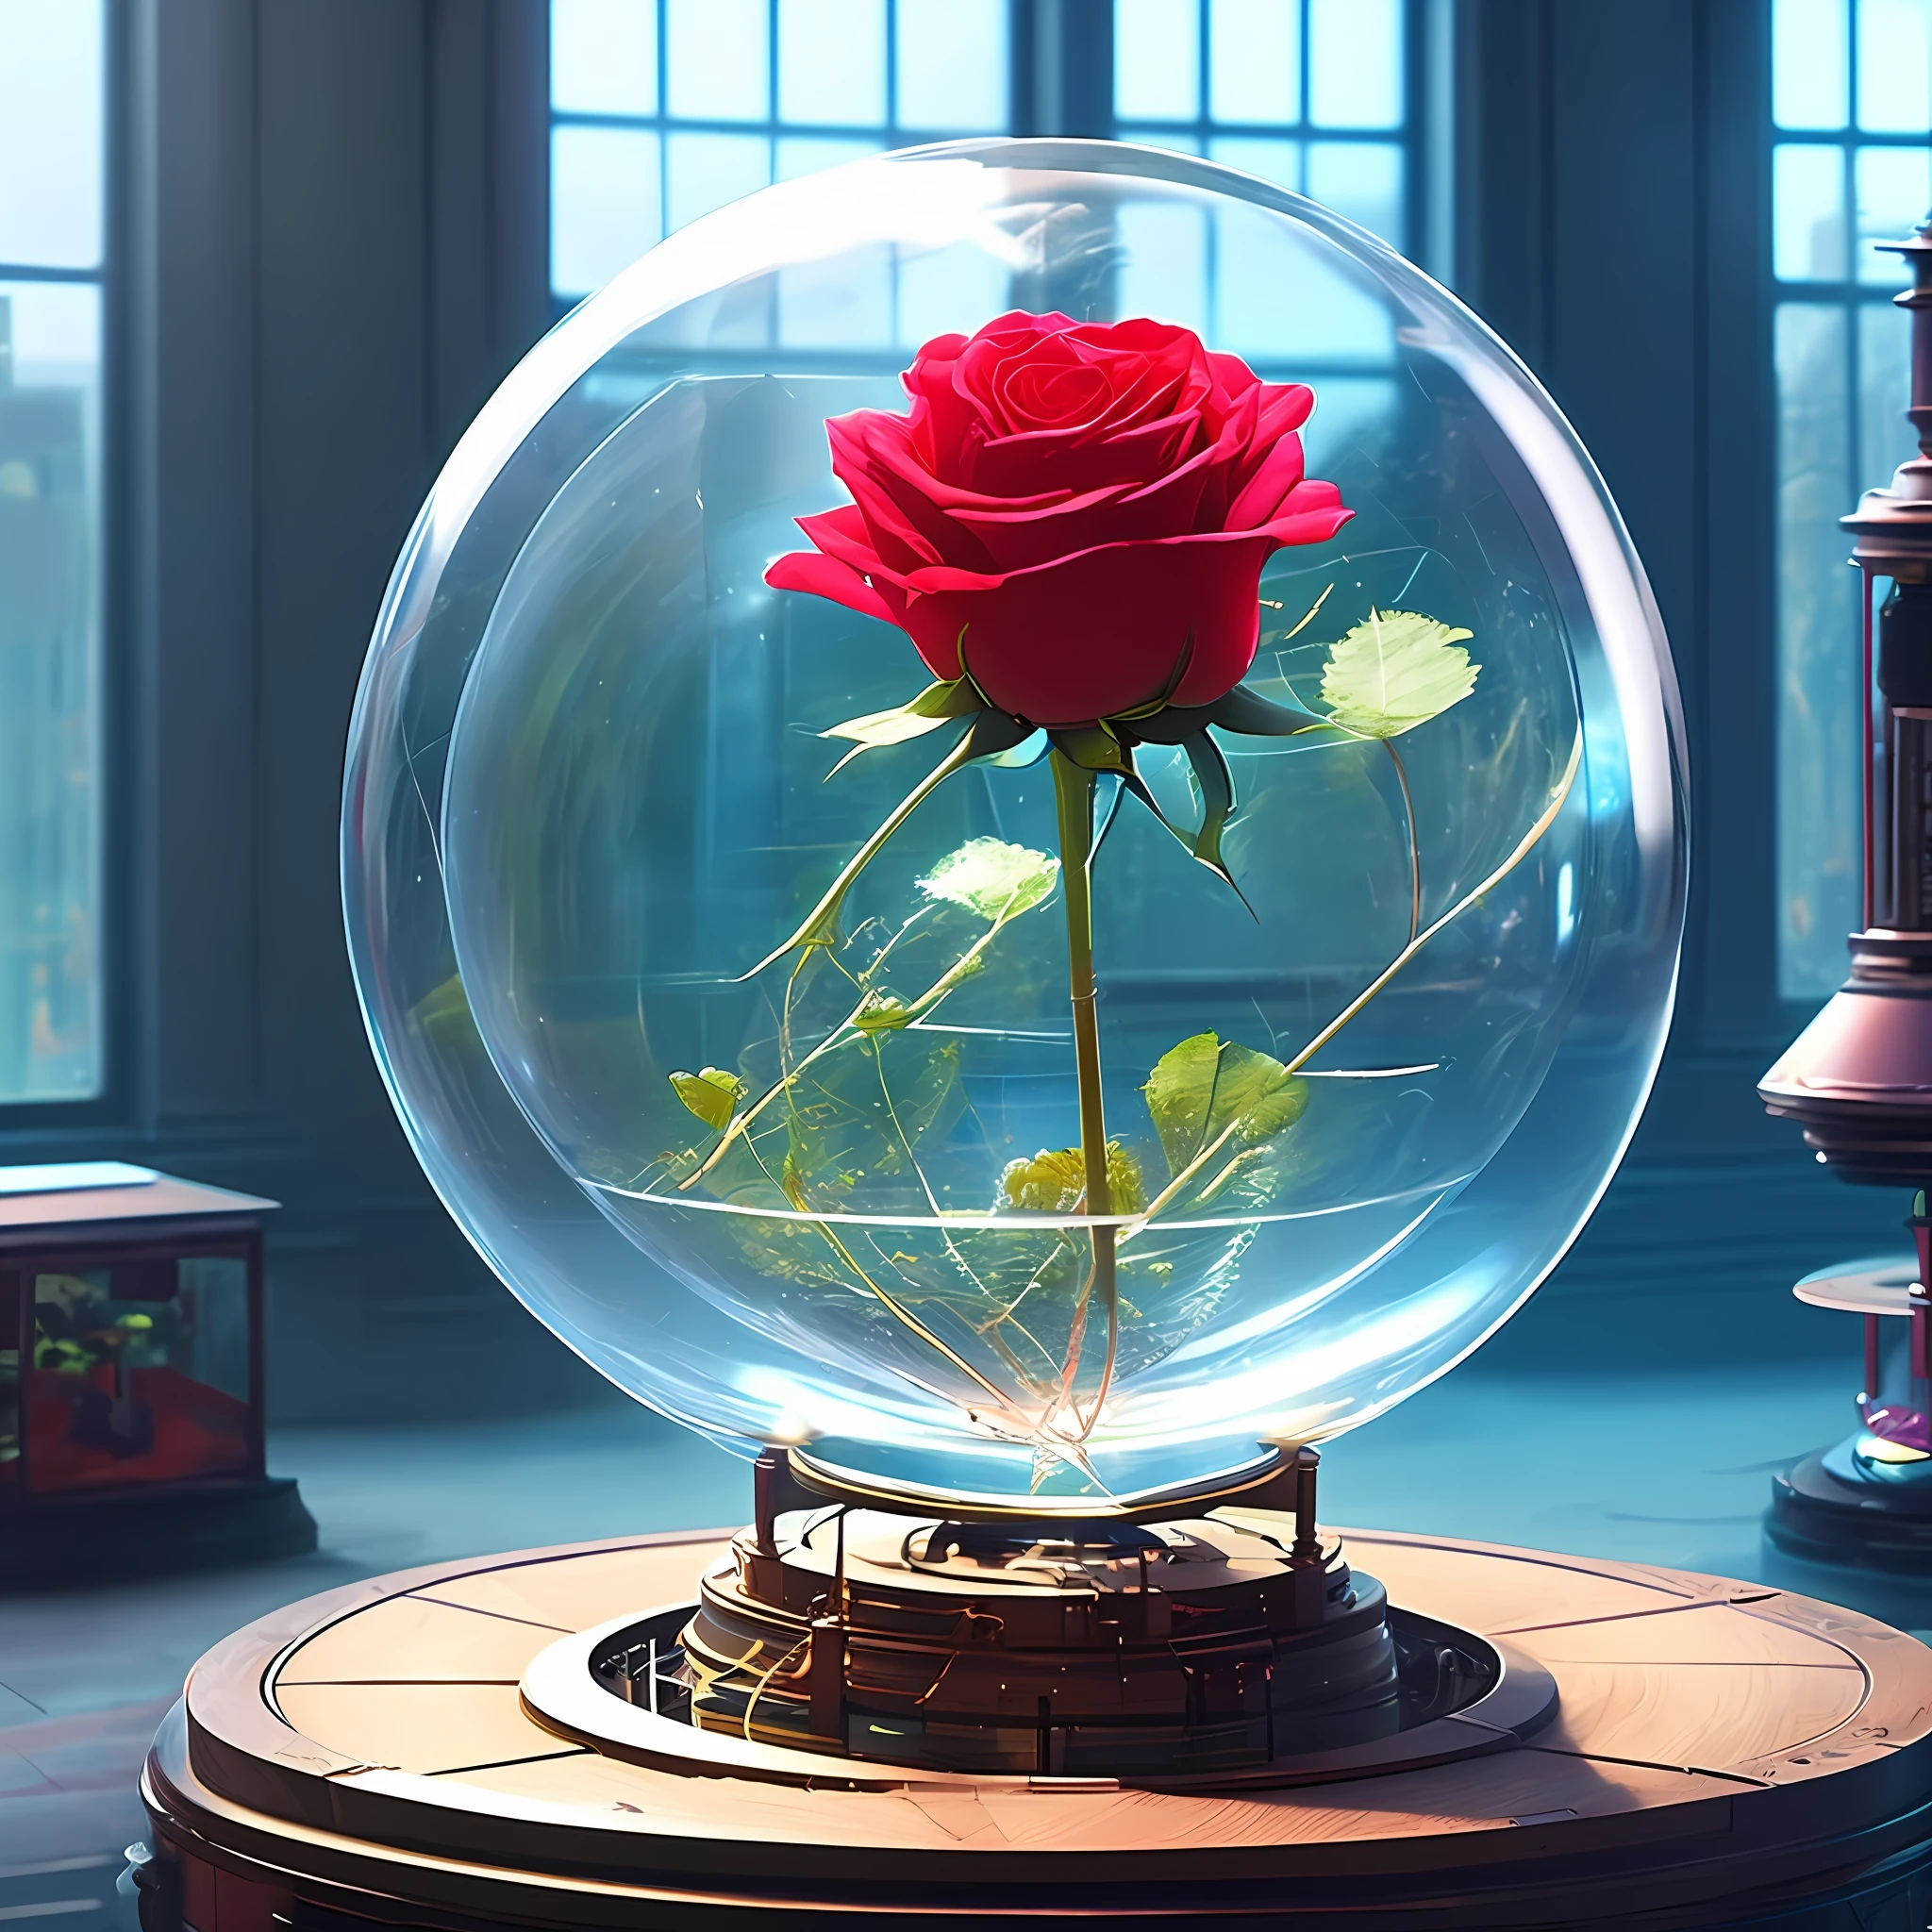 there is a rose floating in a стеклянный купол on a music box base, меланхоничная роза, нежная, элегантный и изящный свет, Красная роза, прозрачная стеклянная ваза, Элегантная леди, стеклянный куполs, естественная точечная роза&#39;, Красиво освещенный, элегантный свет, изящный и элегантный, Розали, стеклянный купол, красивая подсветка, в короткой круглой стеклянной вазе,  гигантская механическая роза, научная фантастика, изобретение, научная фантастика, ретрофутуризм